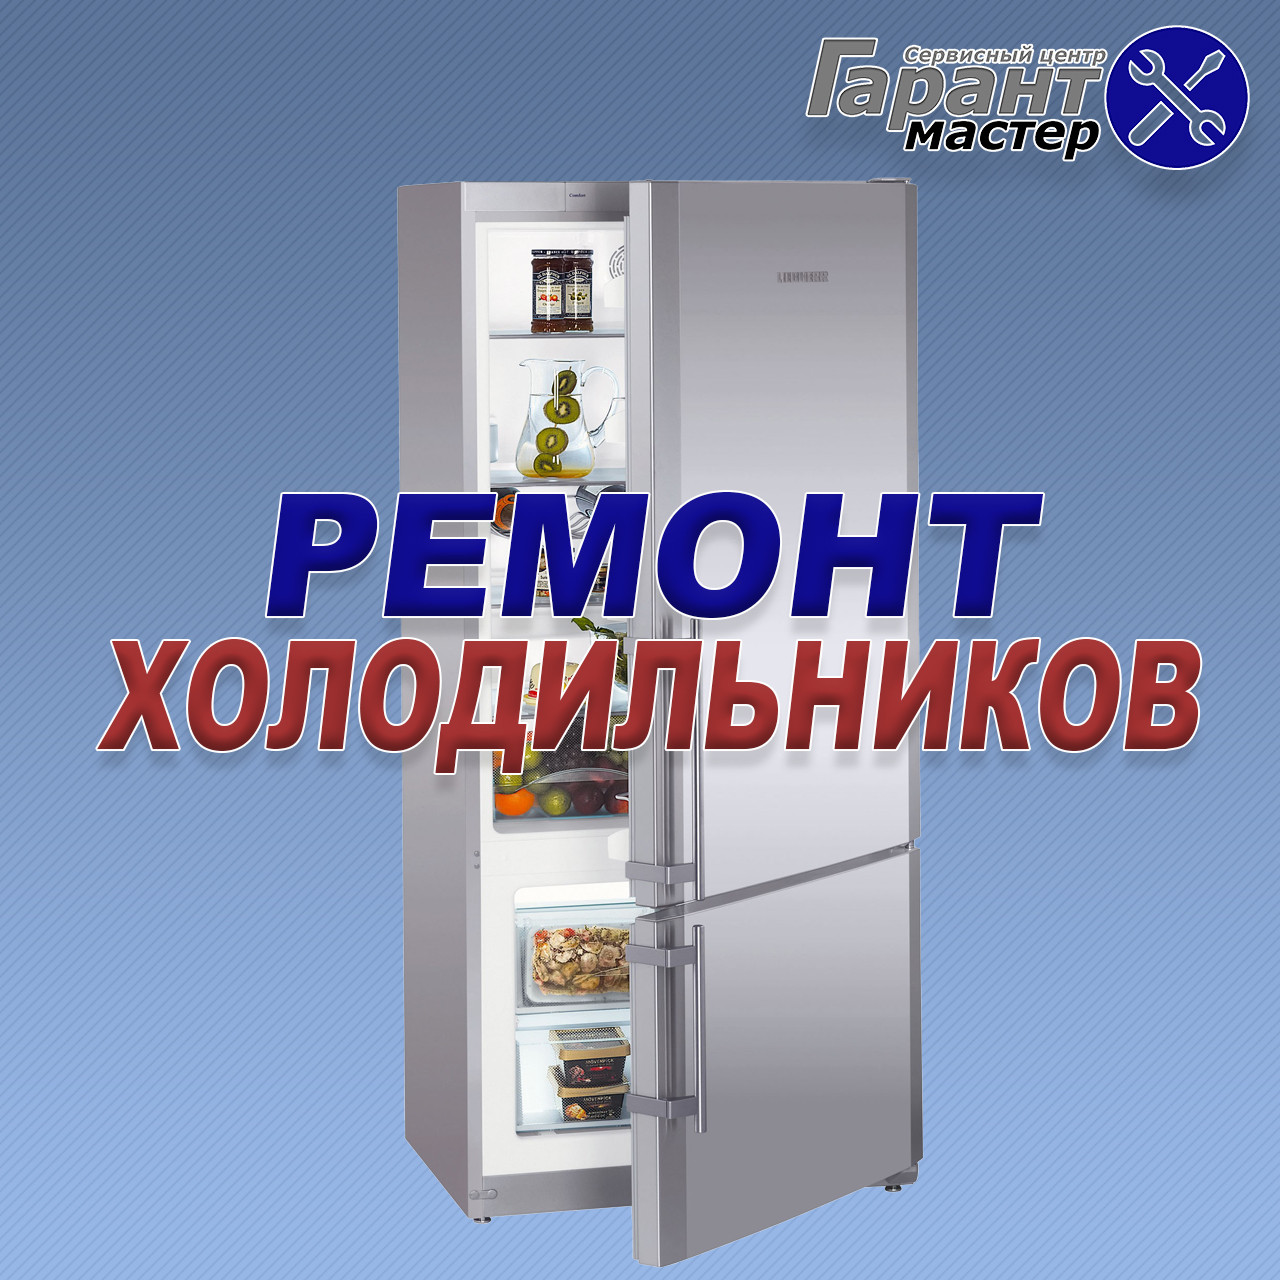 Ремонт холодильников на дому Днепропетровск. Вызов мастера по ремонту 